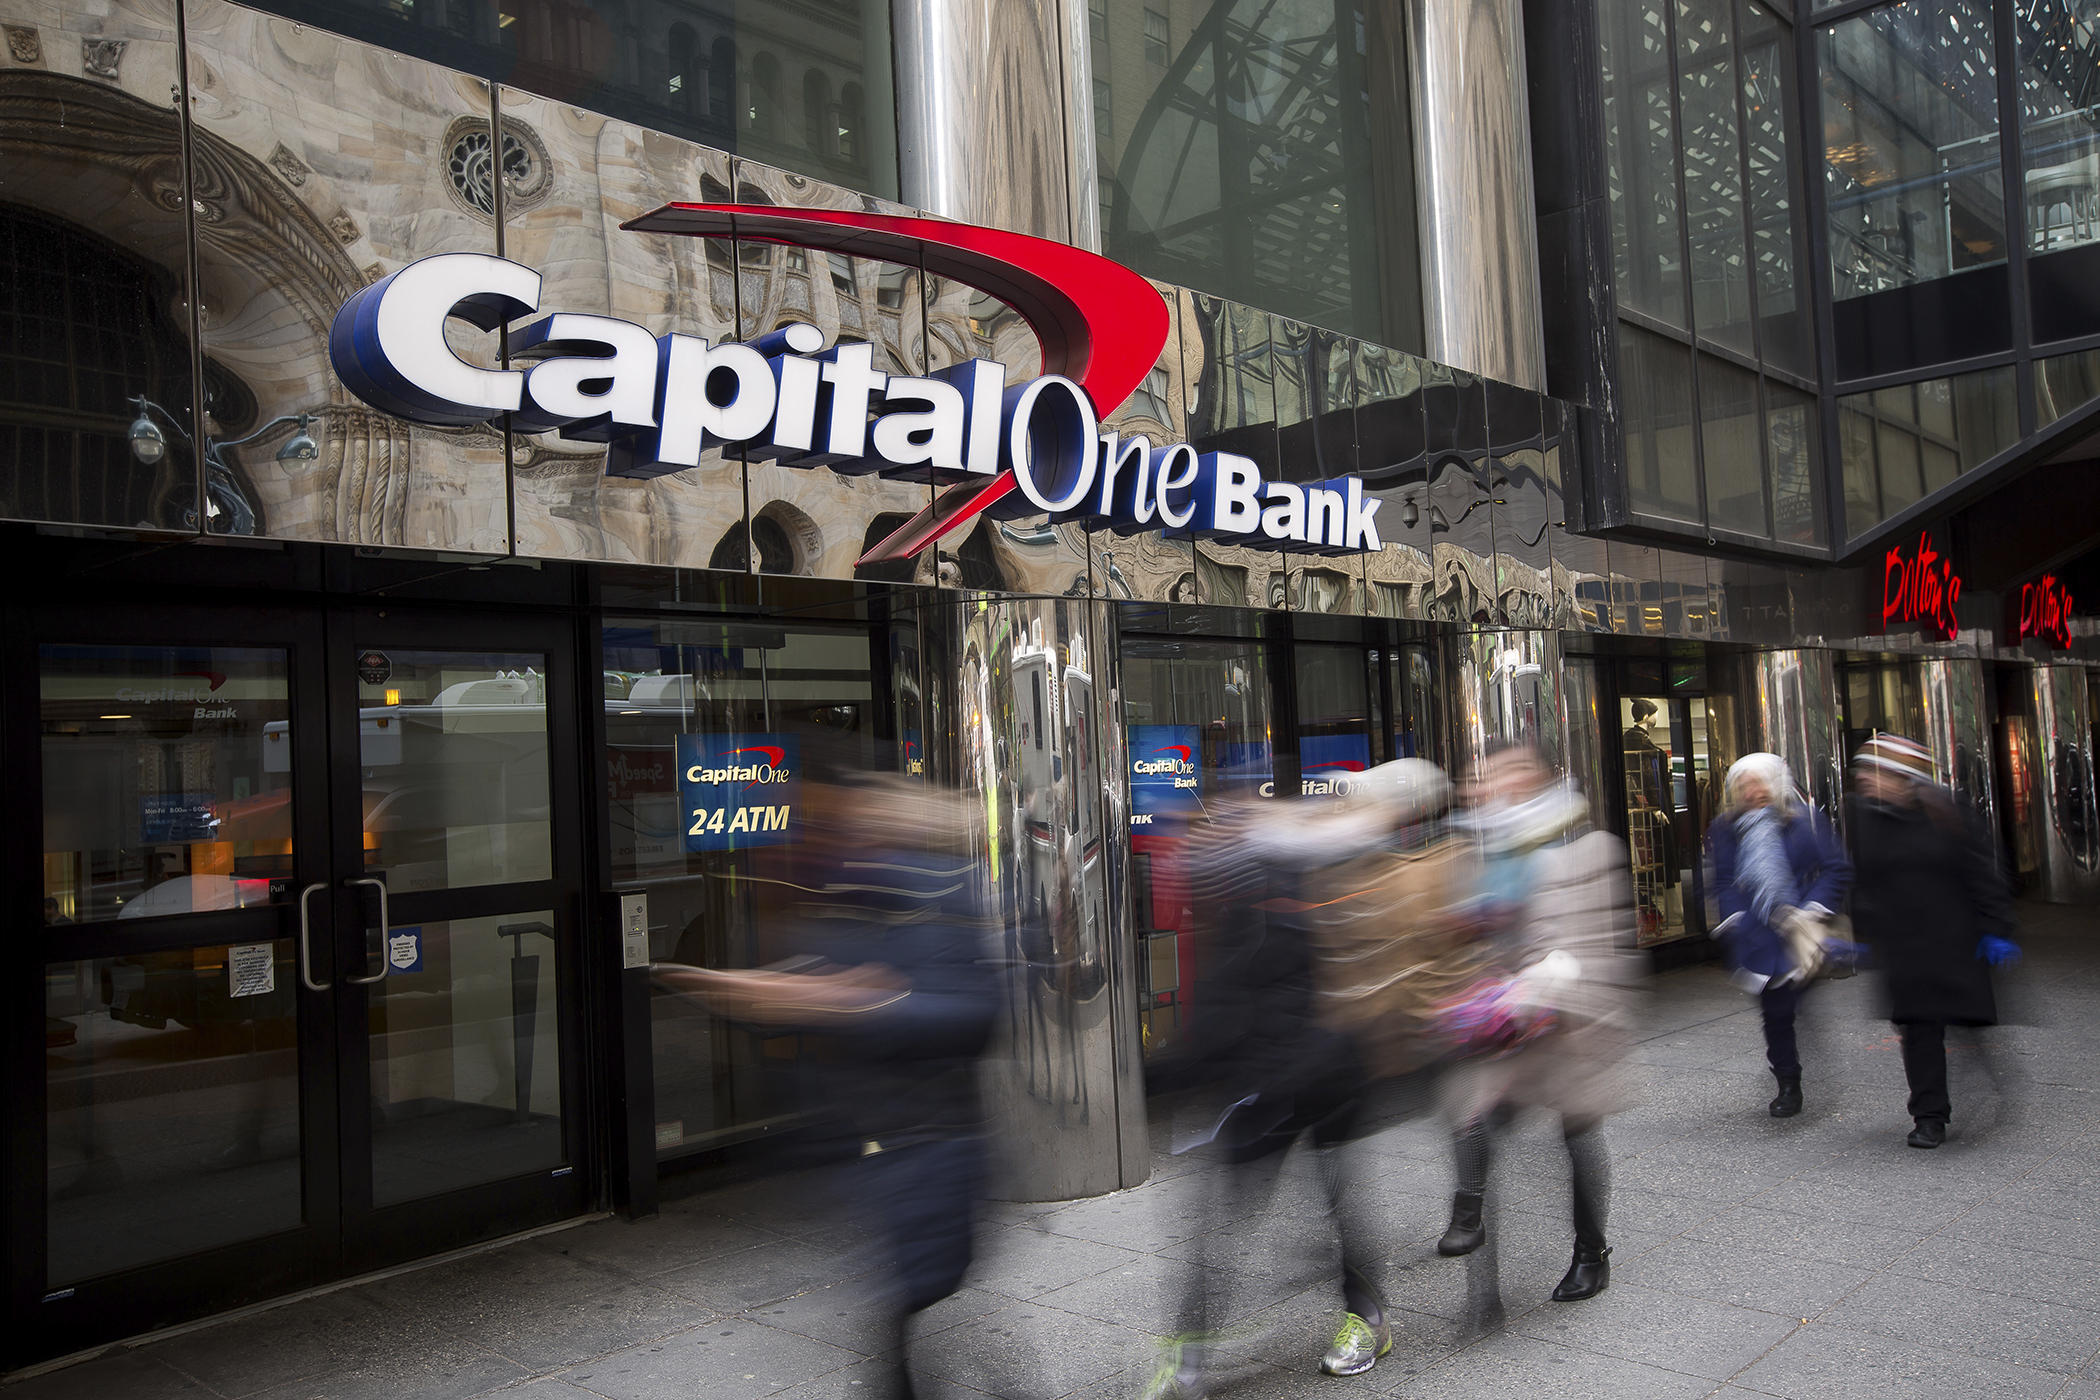 Z banku Capital One wyciekły dane 106 mln klientów